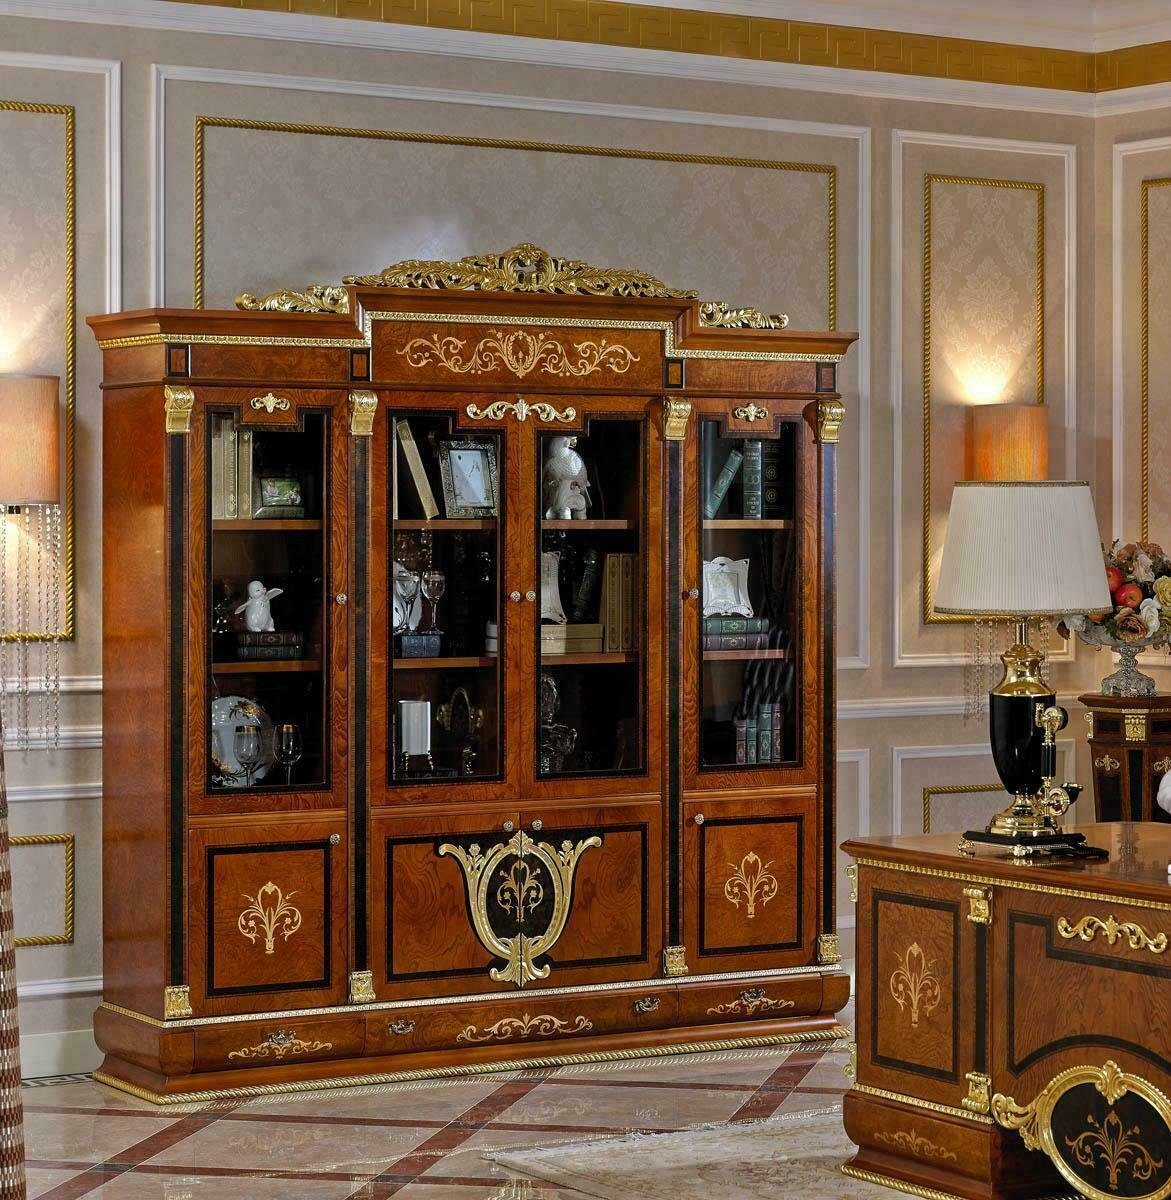 JVmoebel Aktenschrank XXL Büro Bücherschrank Aktenschrank Edle Luxus Möbel Stil Antik